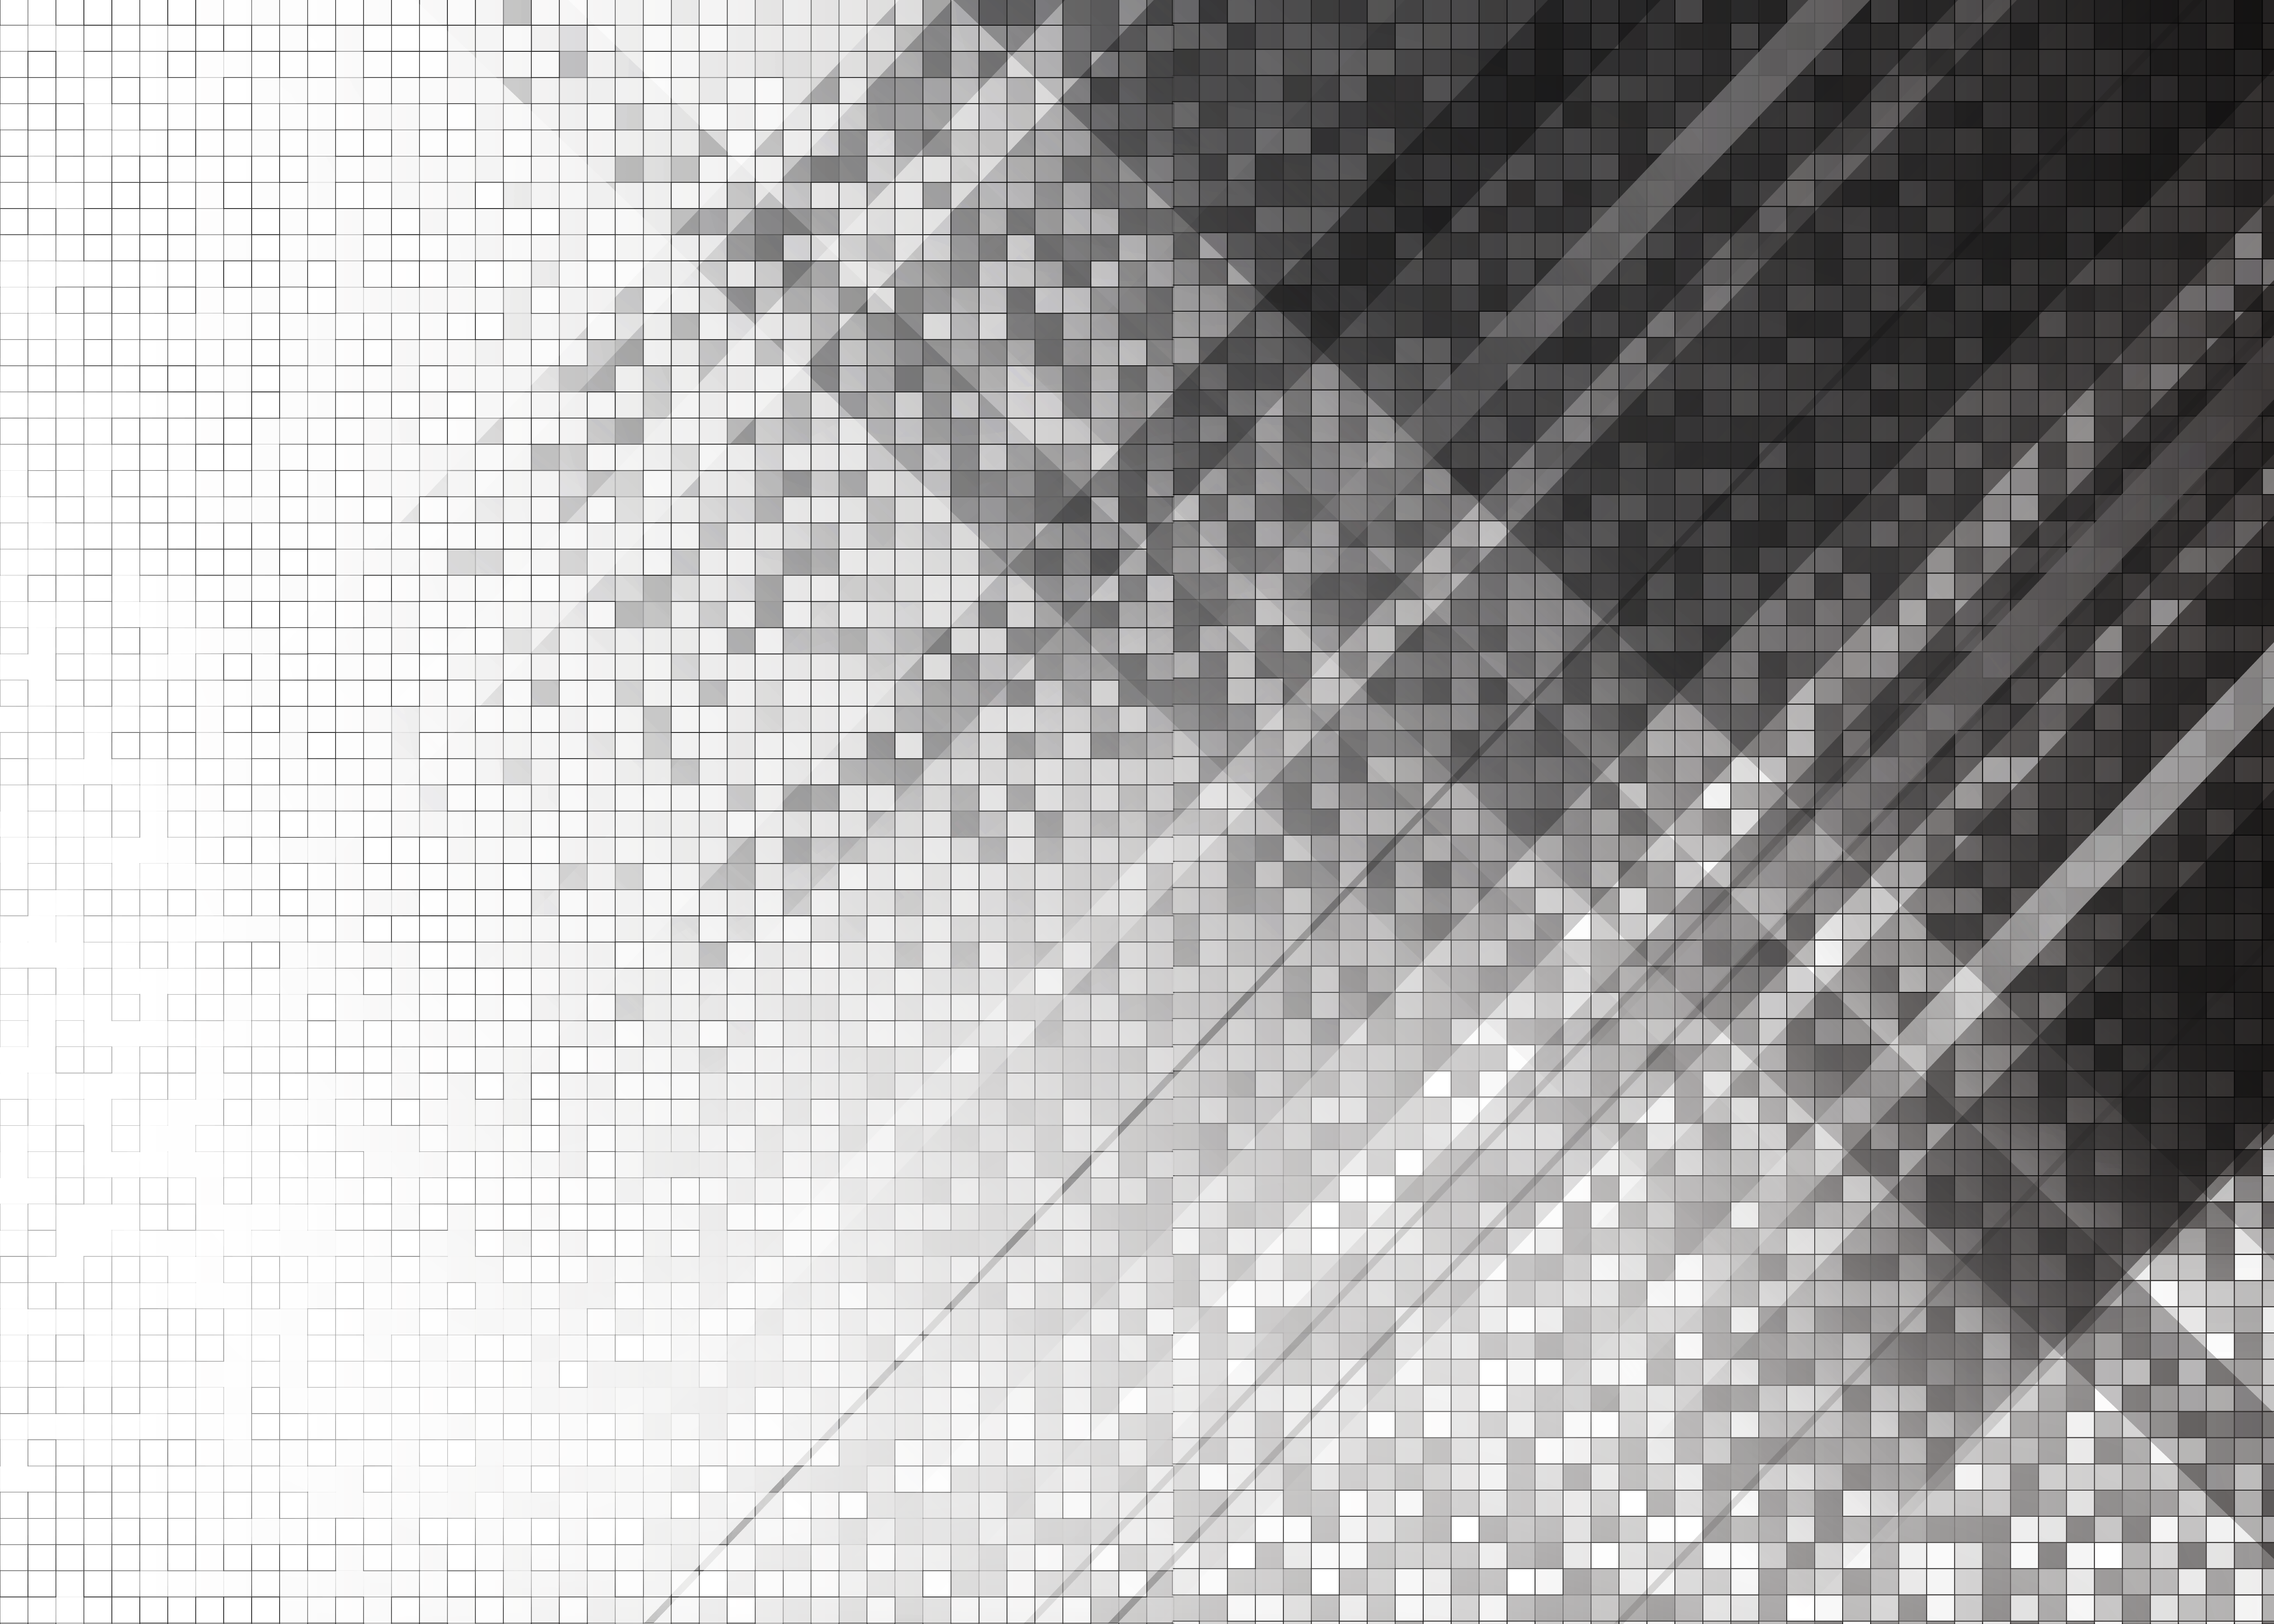 黑白渐变纹理磨砂玻璃贴图 (7)材质贴图下载-【集简空间】「每日更新」